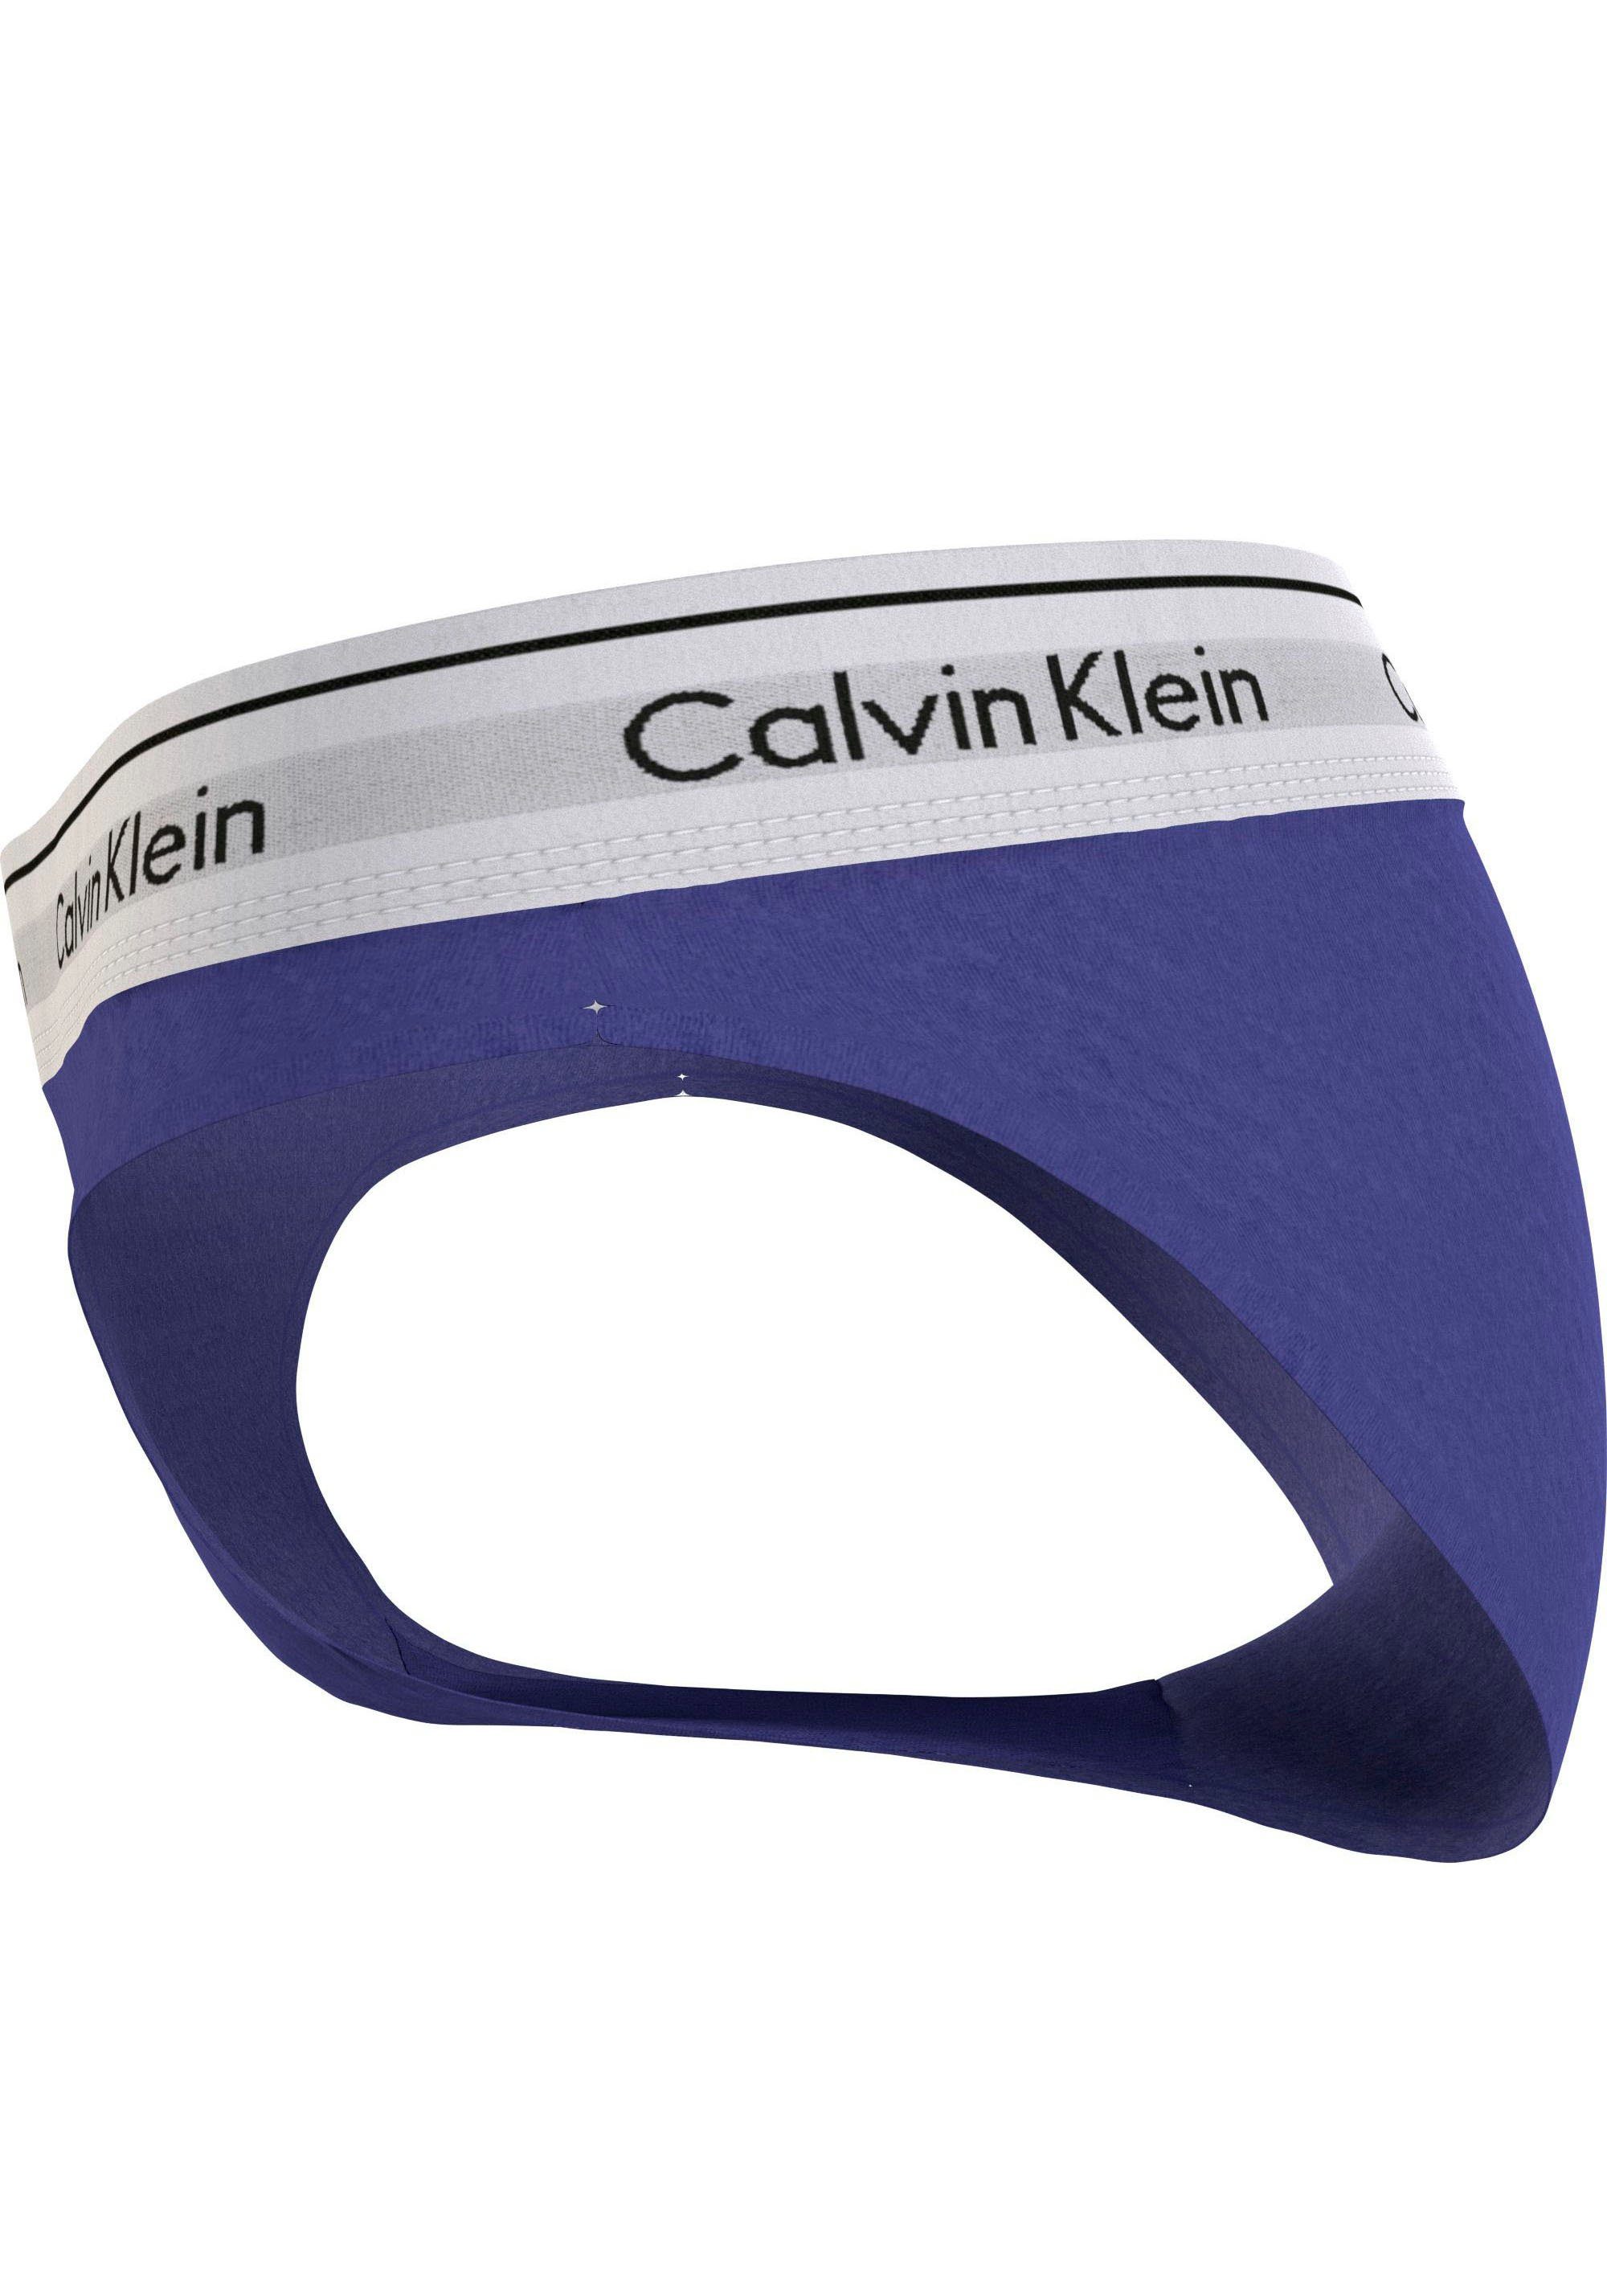 Calvin Klein Underwear Bikinislip BIKINI klassischem Logo blau mit